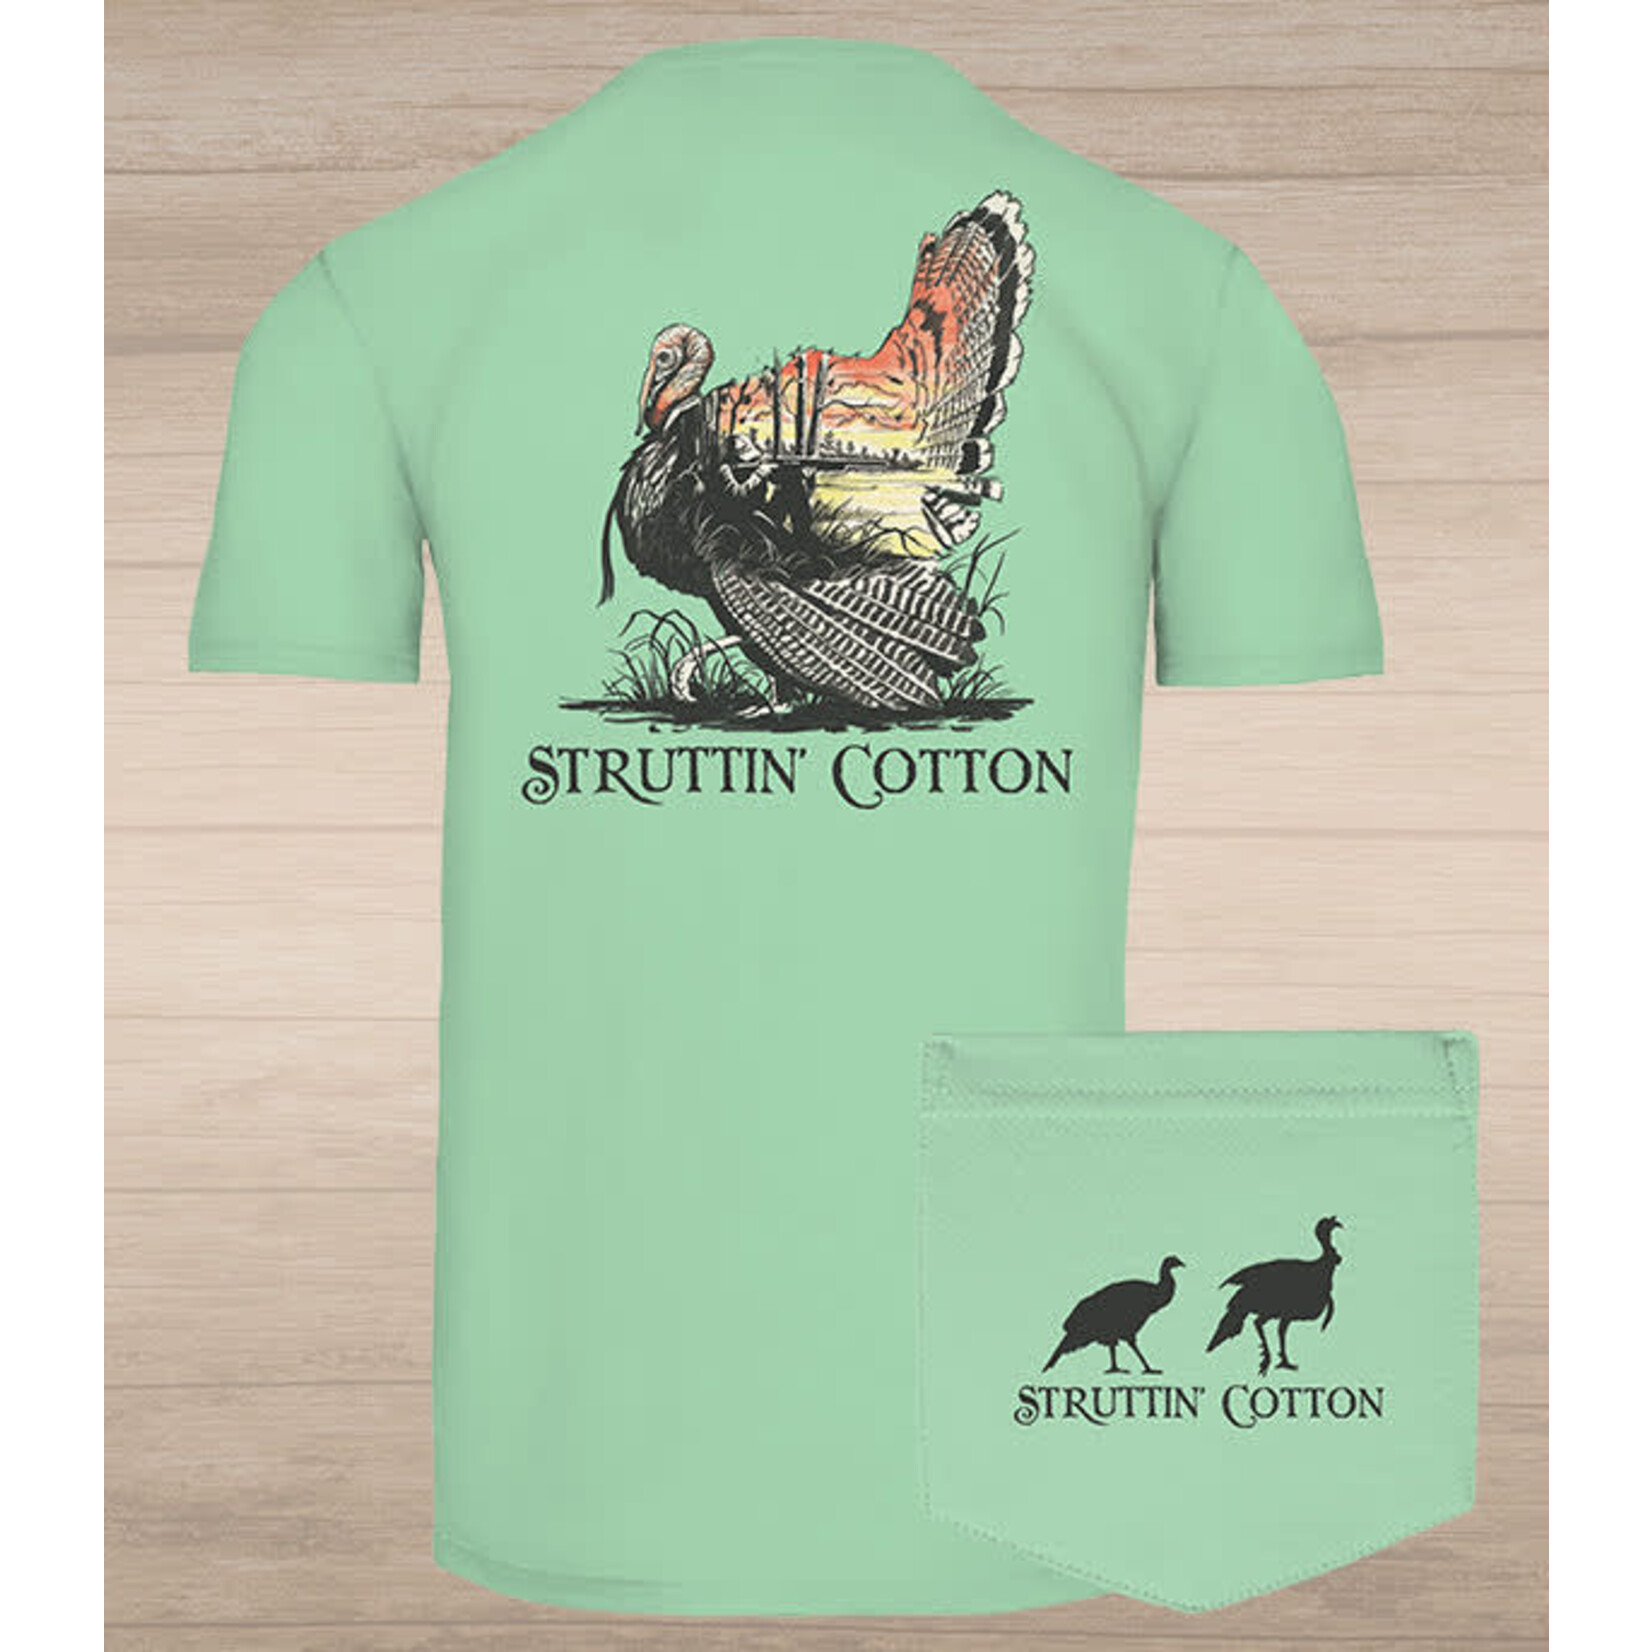 Struttin' Cotton Struttin Cotton In the Field S/S TEE Shirt